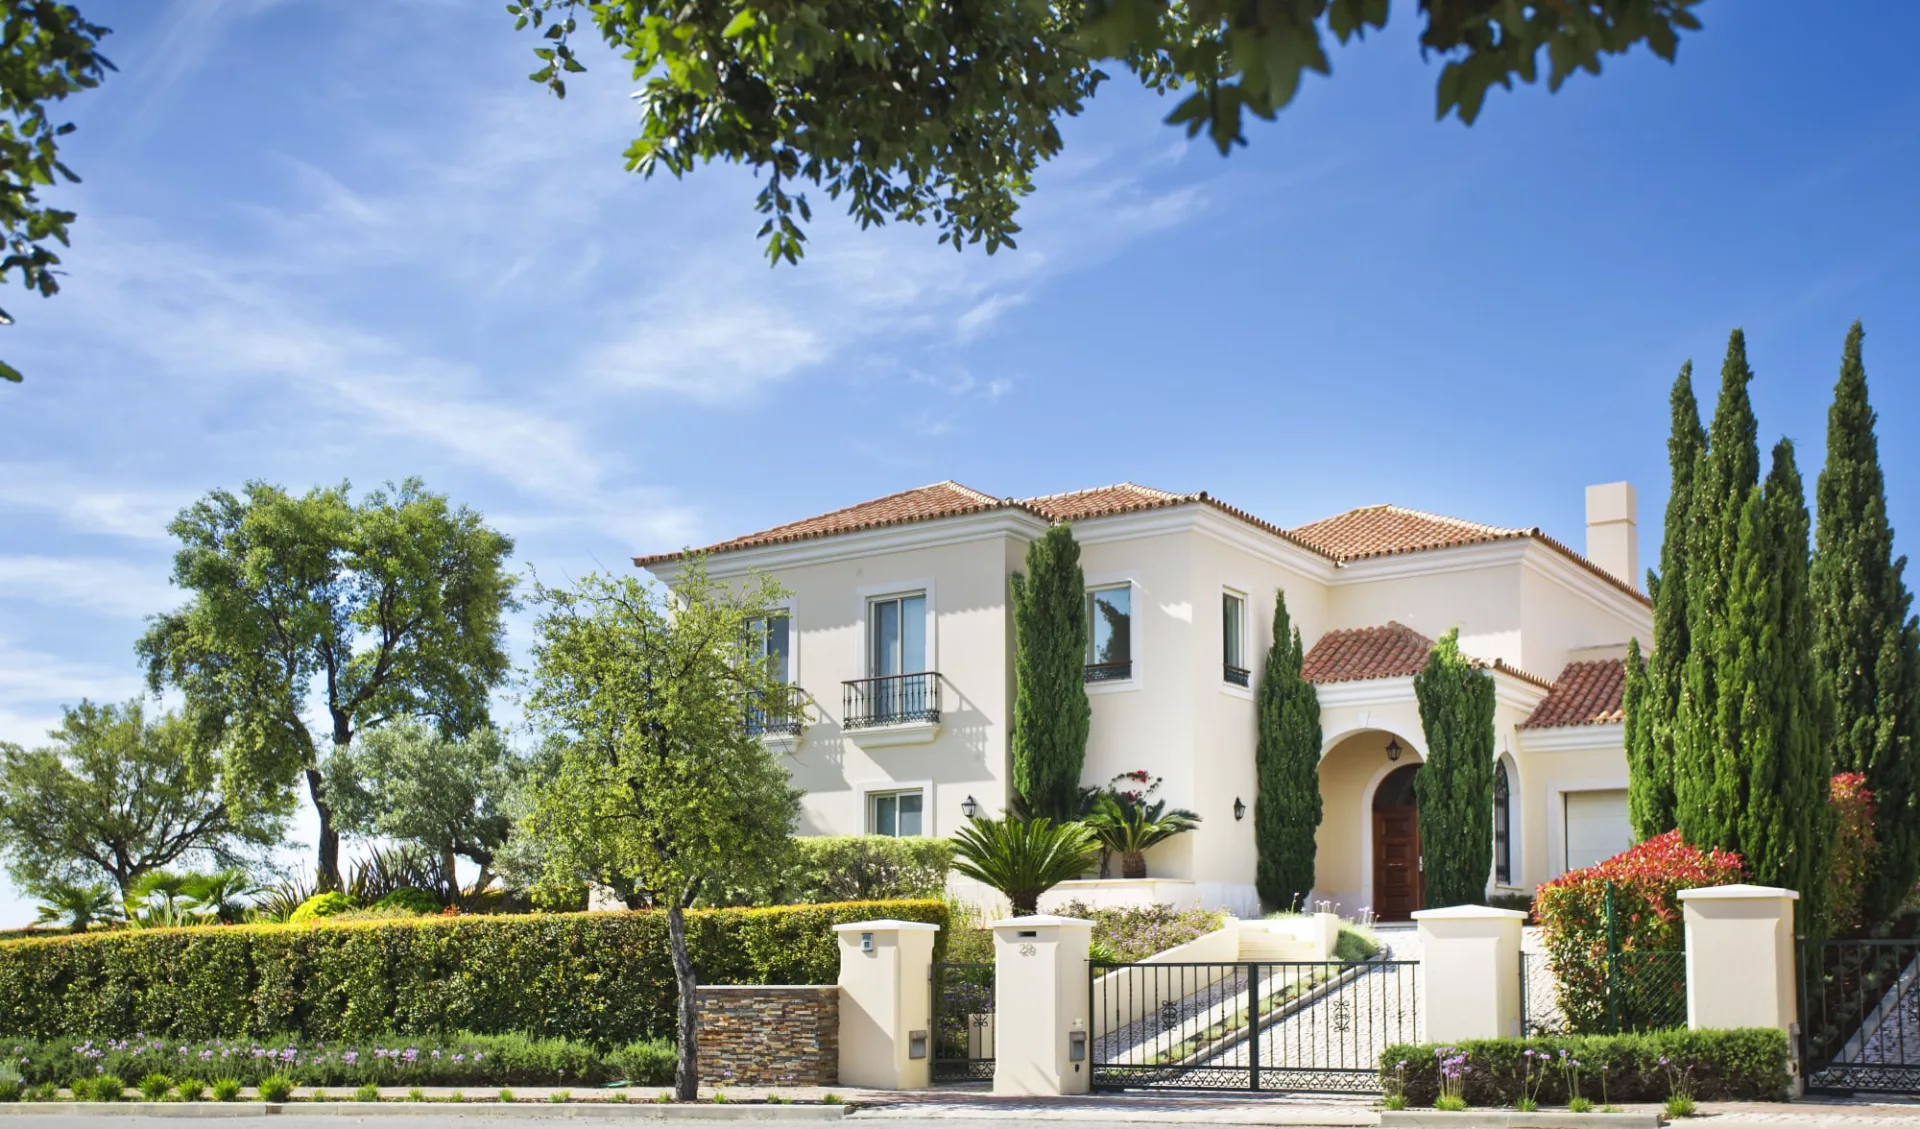 Monte Rei Golf & Country Club in Algarve:  Individual Villa - Front facade